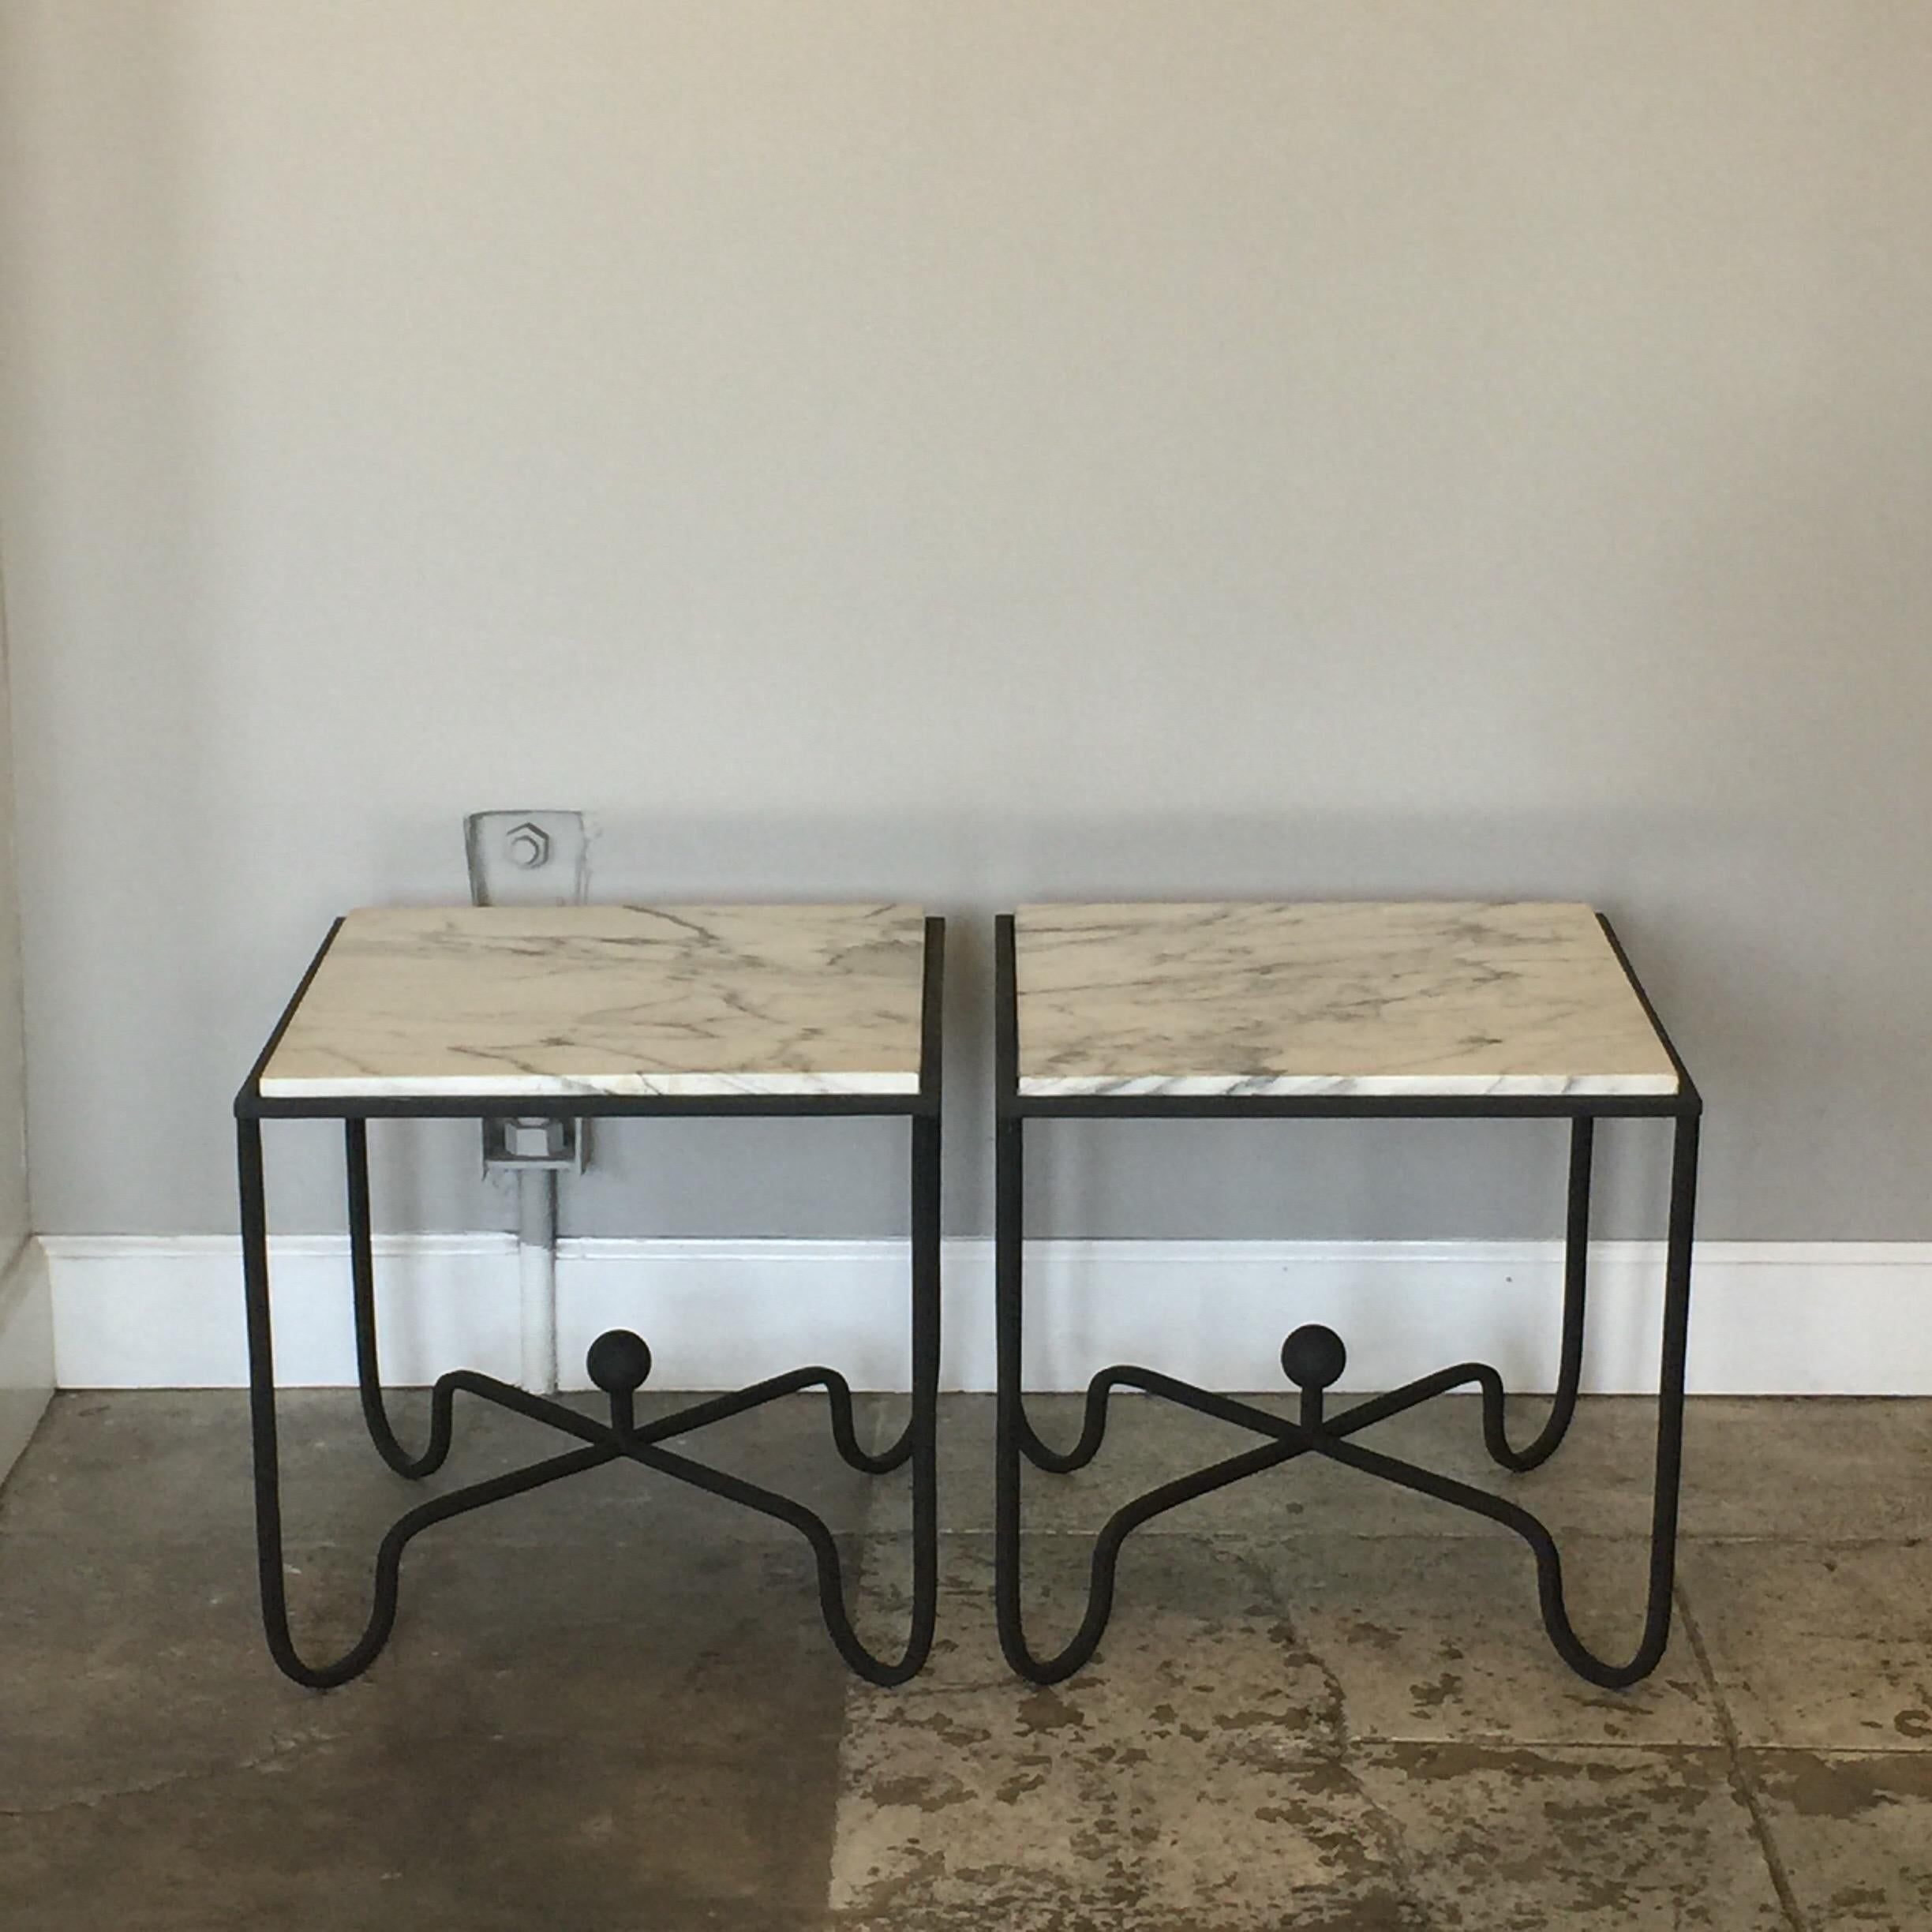 Paire de tables d'appoint 'Entretoise' en fer forgé et marbre de Design Frères. Des bases en fer forgé noir mat et des plateaux en marbre blanc veiné poli.